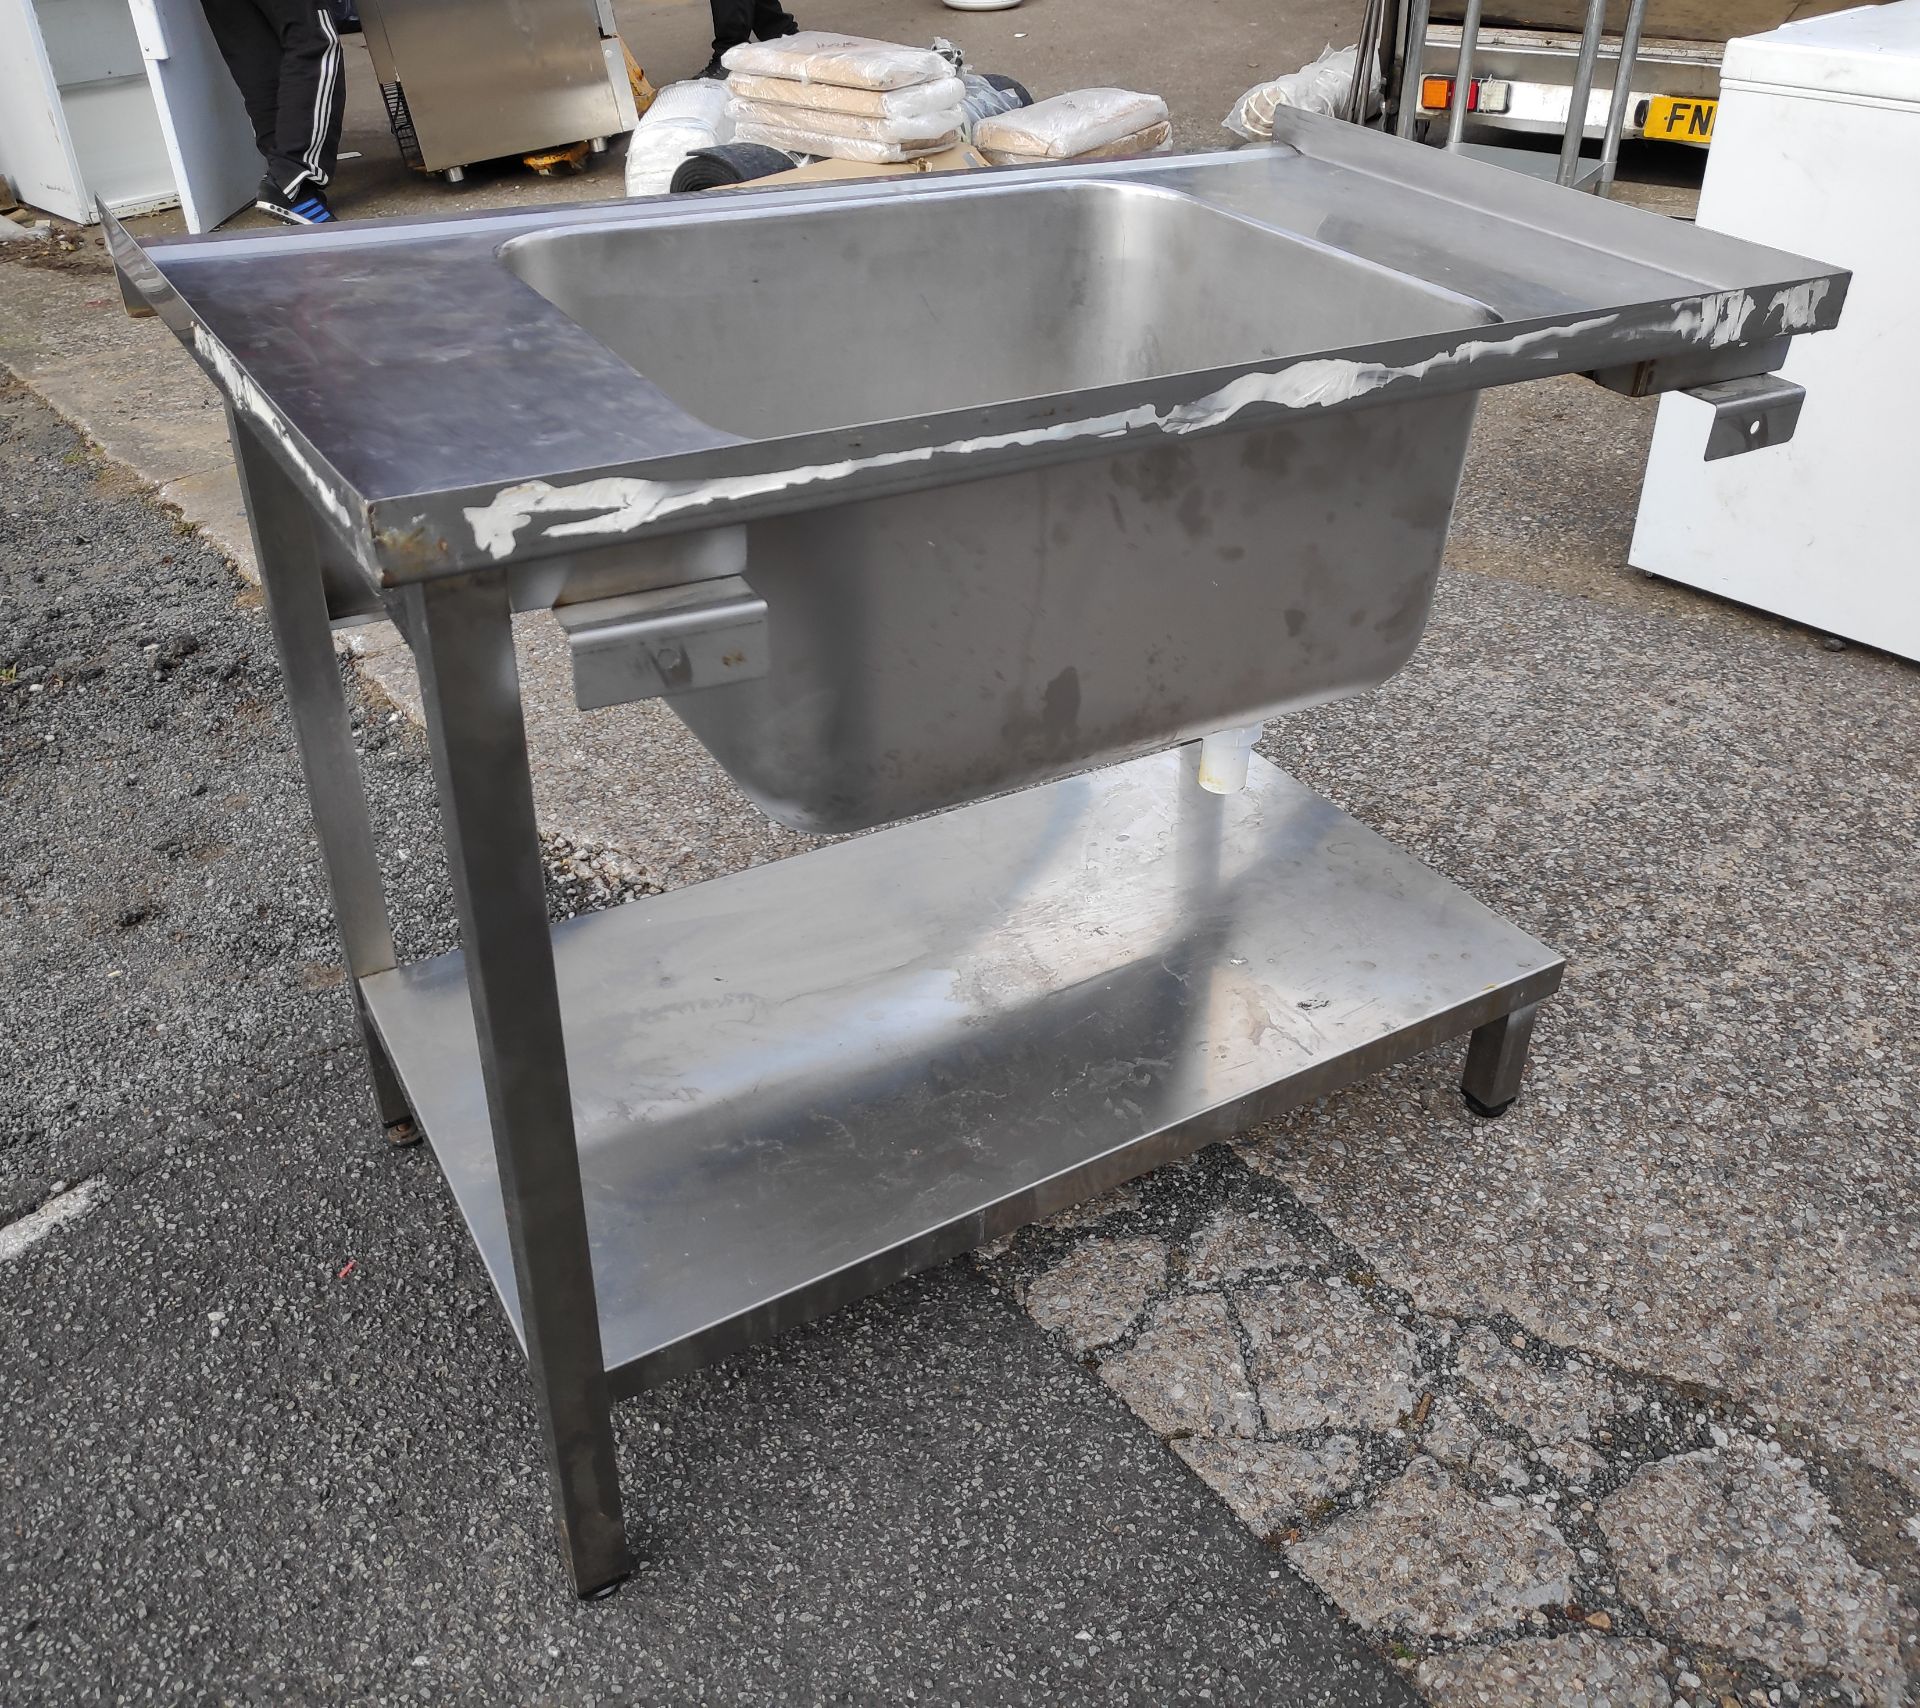 1 x Large Stainless Steel Single Bowl Sink Unit - 105.5cm (L) x 65cm (D) x 91.5cm (H) - JMCS105 - - Image 4 of 6